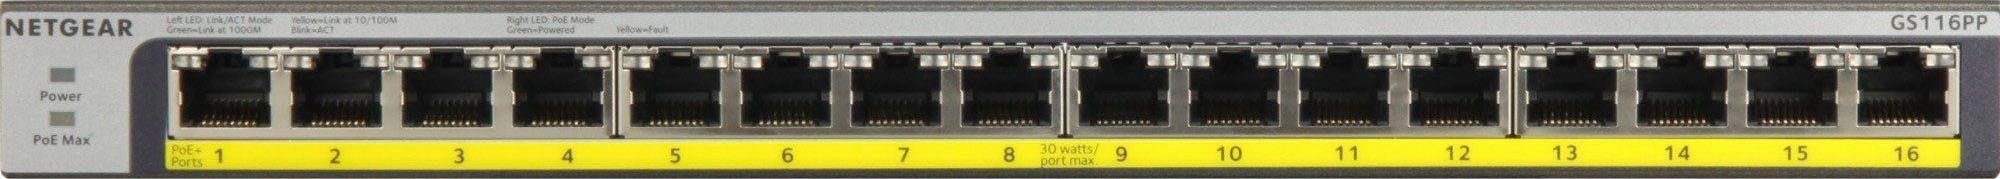 Netzwerk-Switch GS116PP NETGEAR